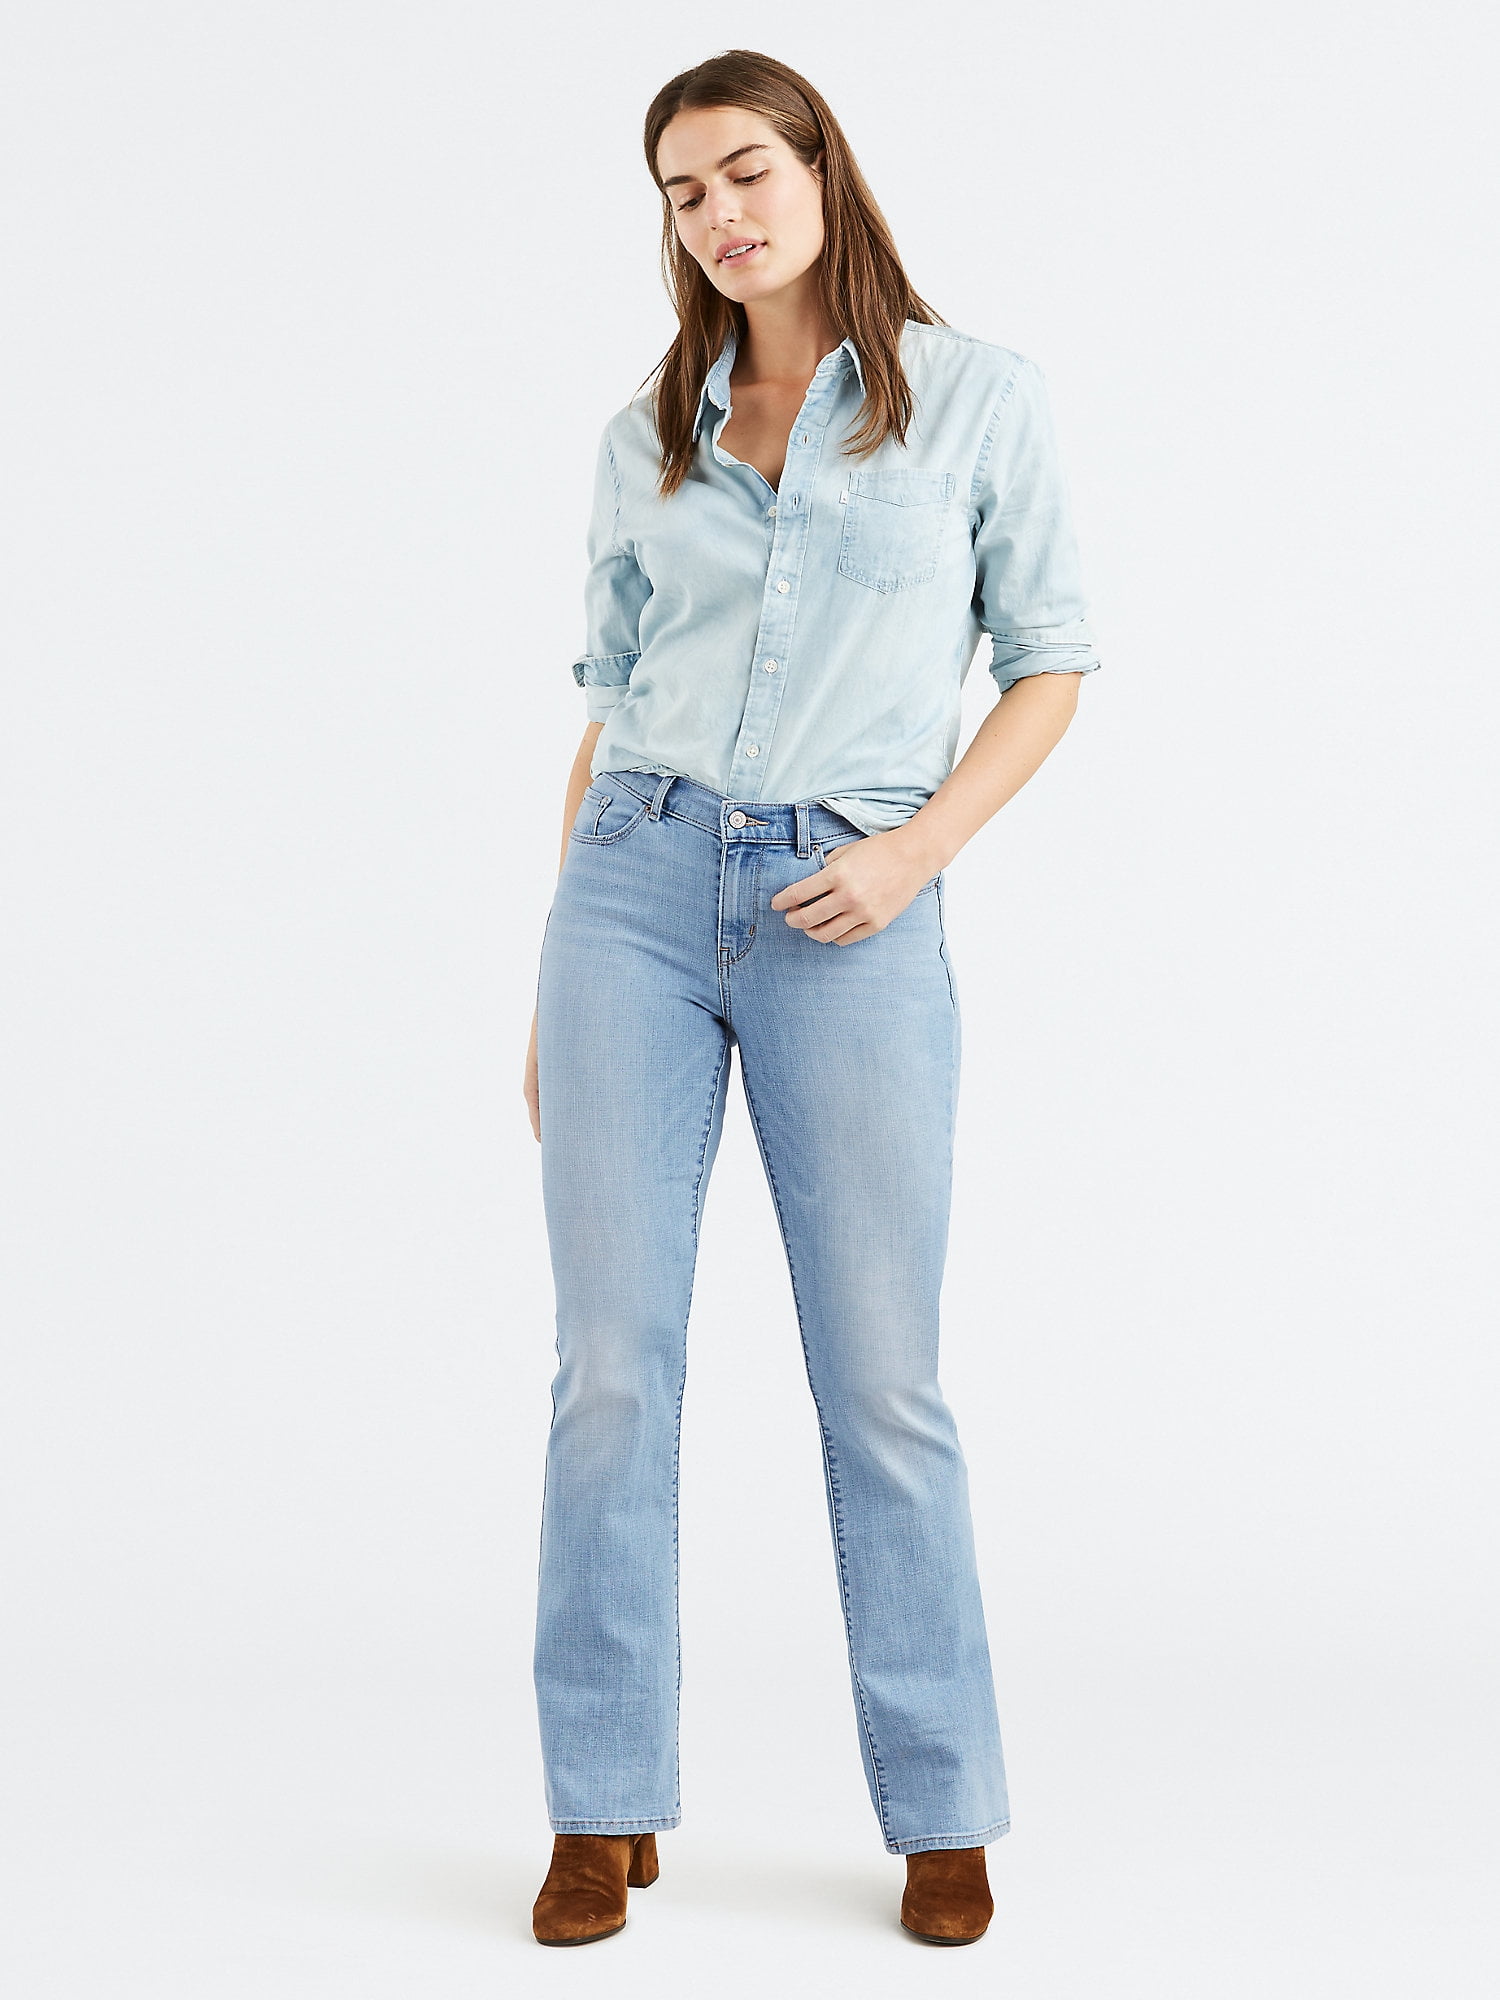 Levi's Original Women's Classic Bootcut Jeans 